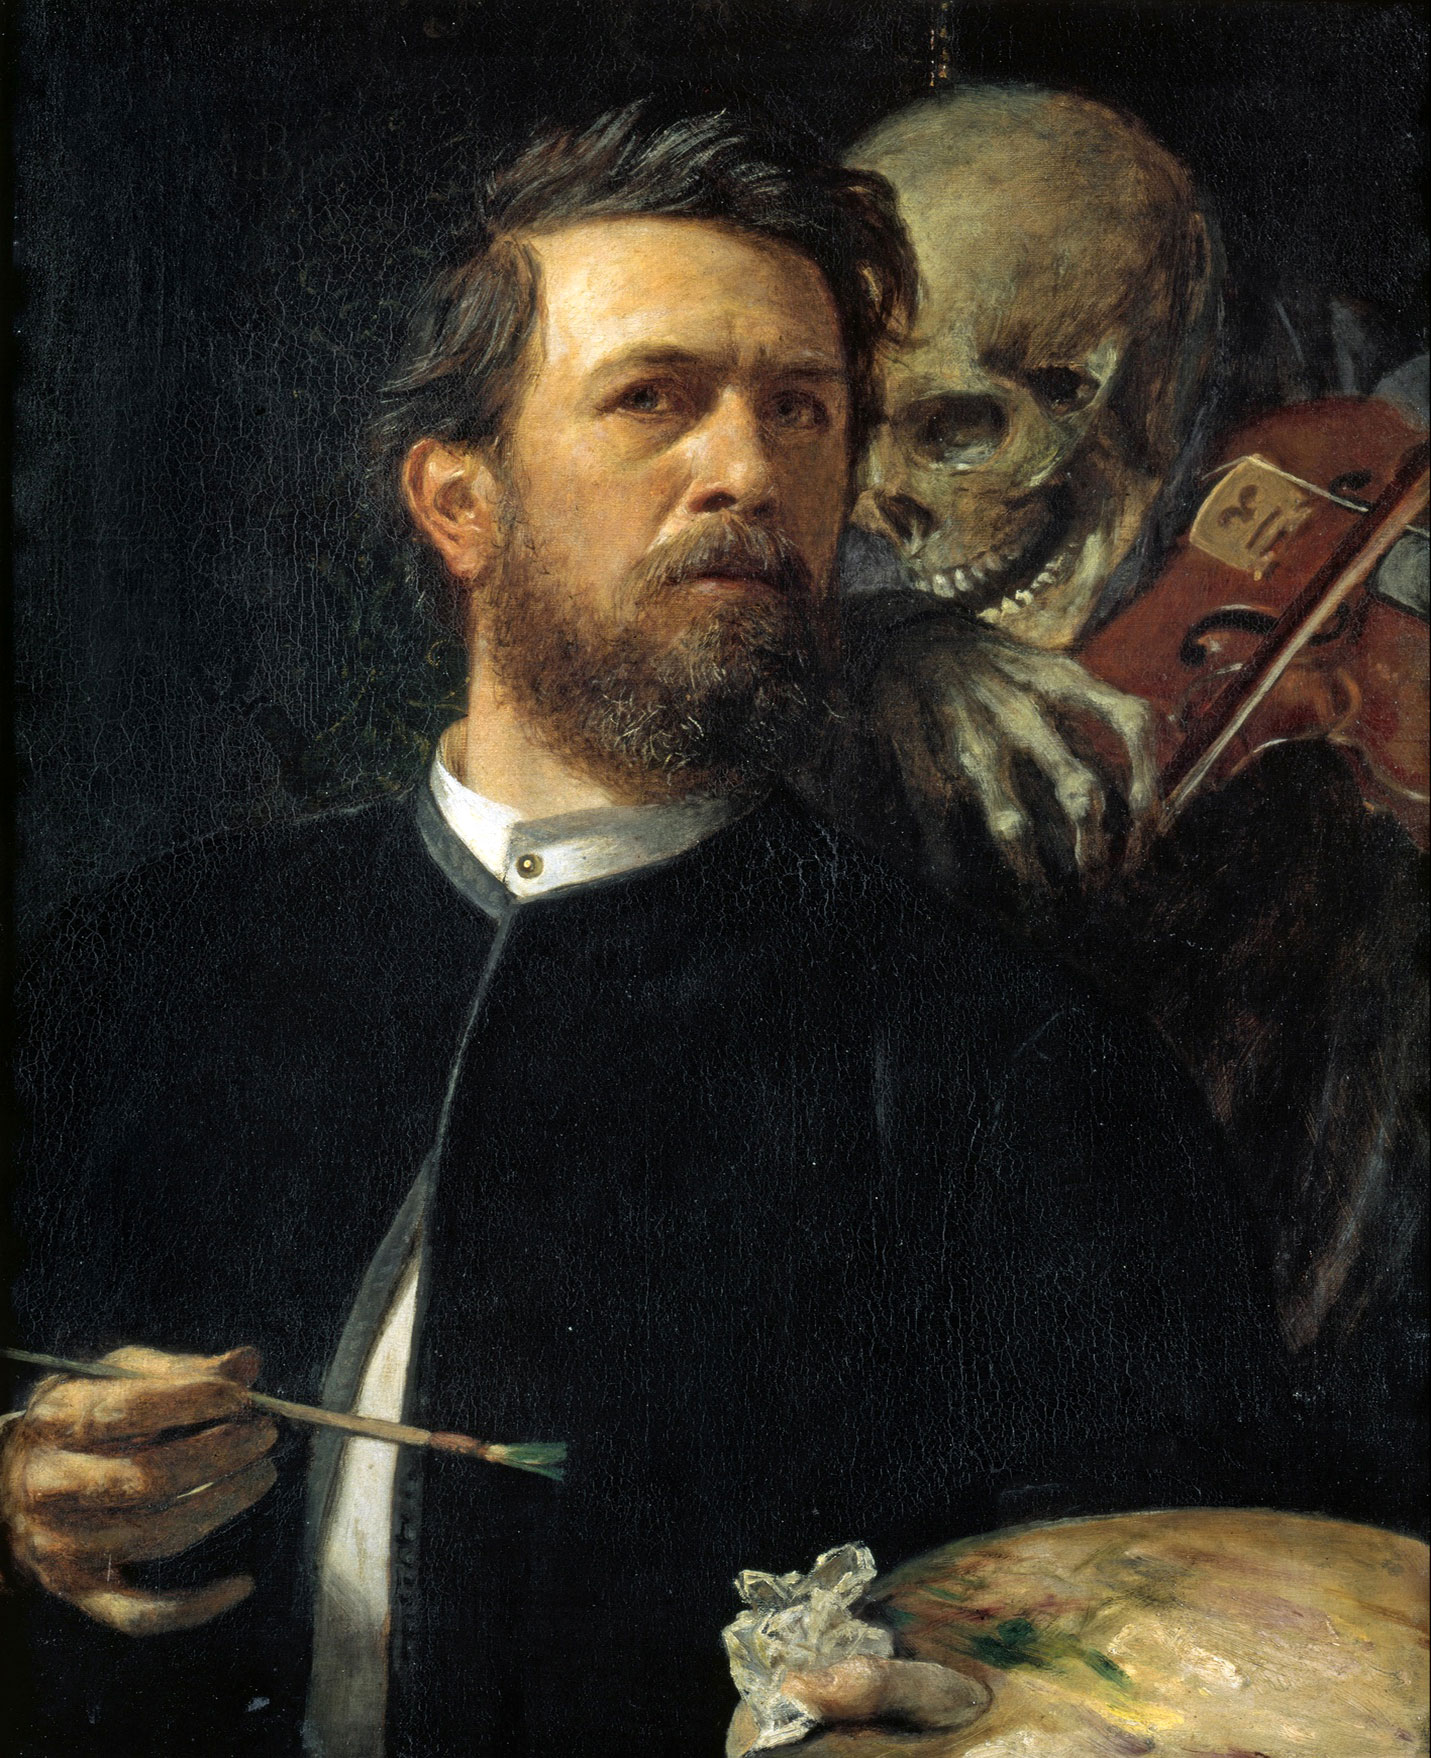 Arnold Böcklin - 16 October 1827 - 16 January 1901